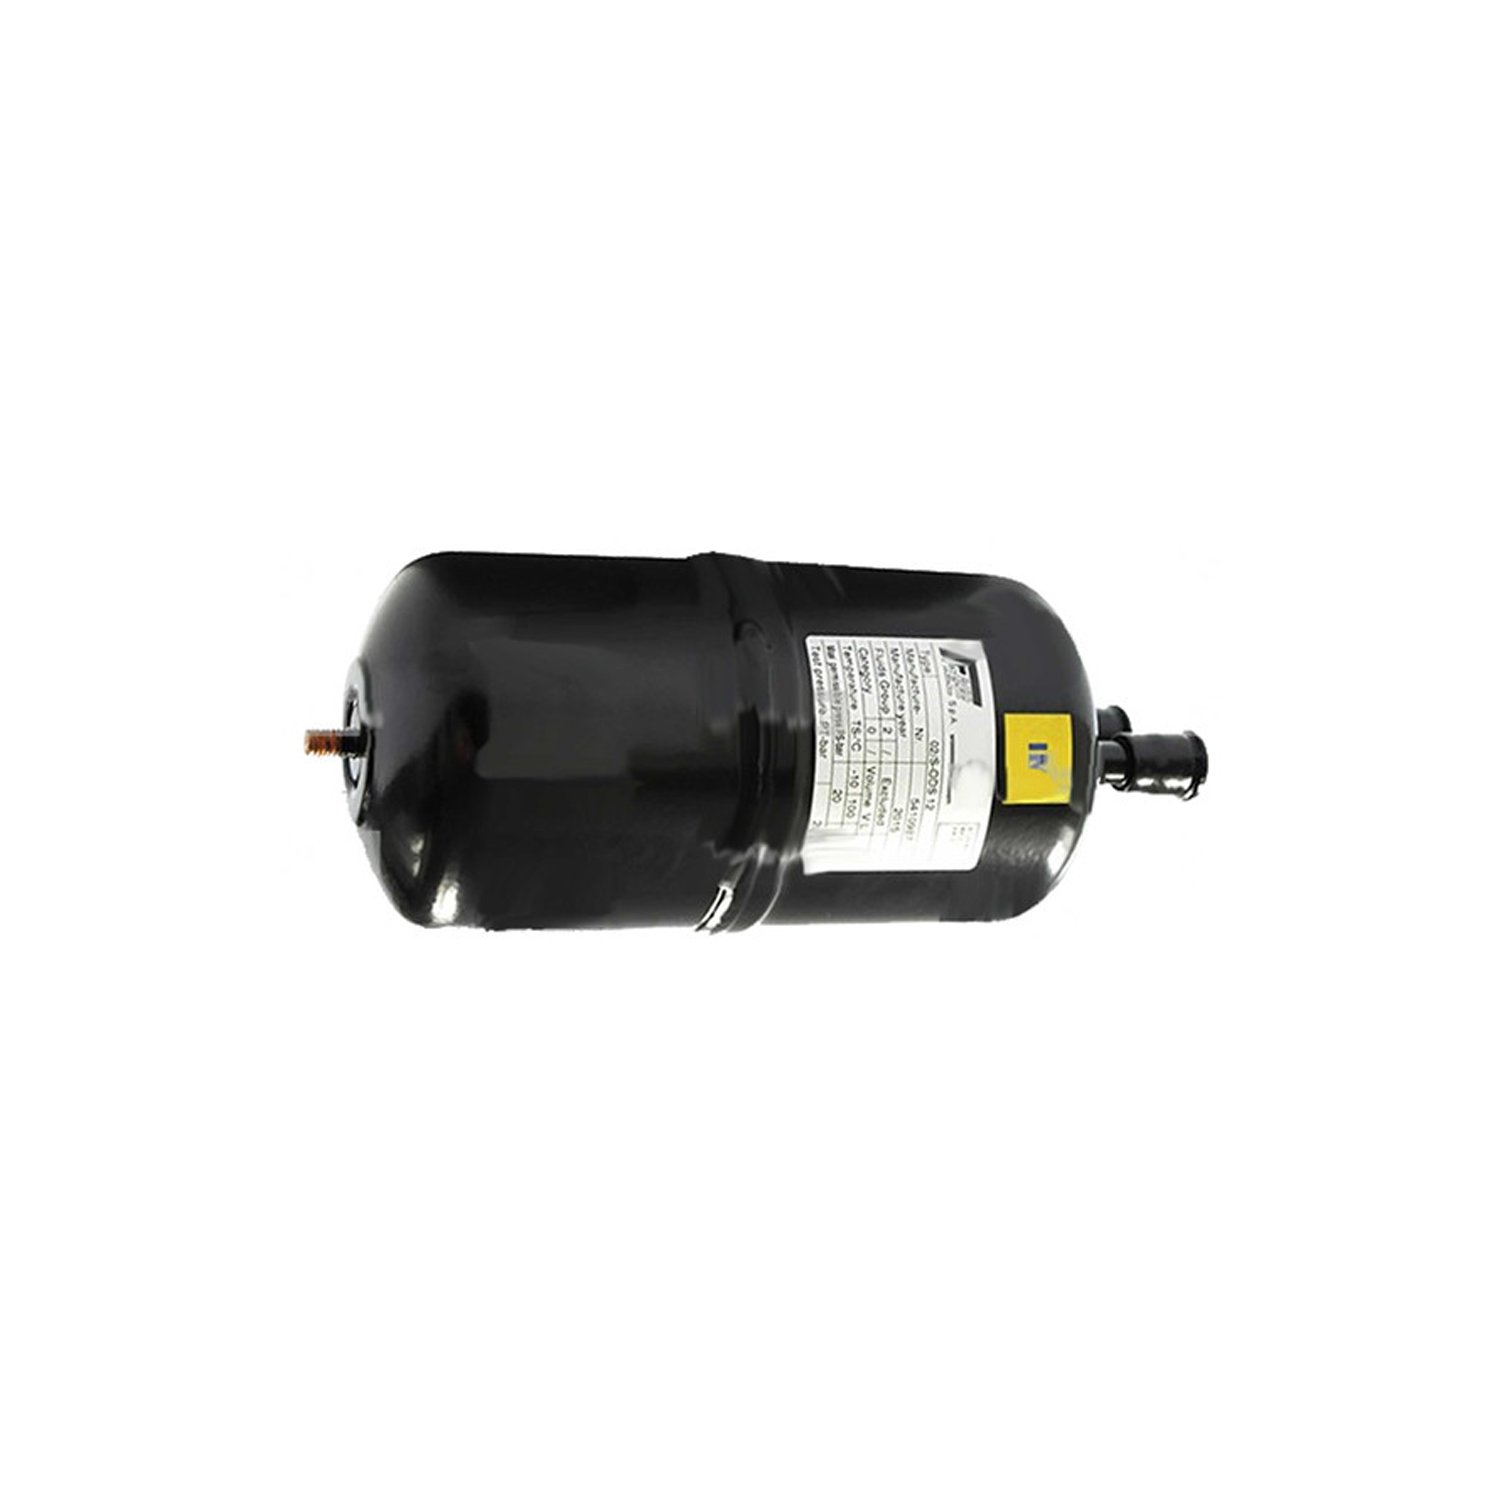 Separador de líquidos Frigomec 03 / S 16 mm, volumen: 1,6 l, conexión: 16 mm ODS